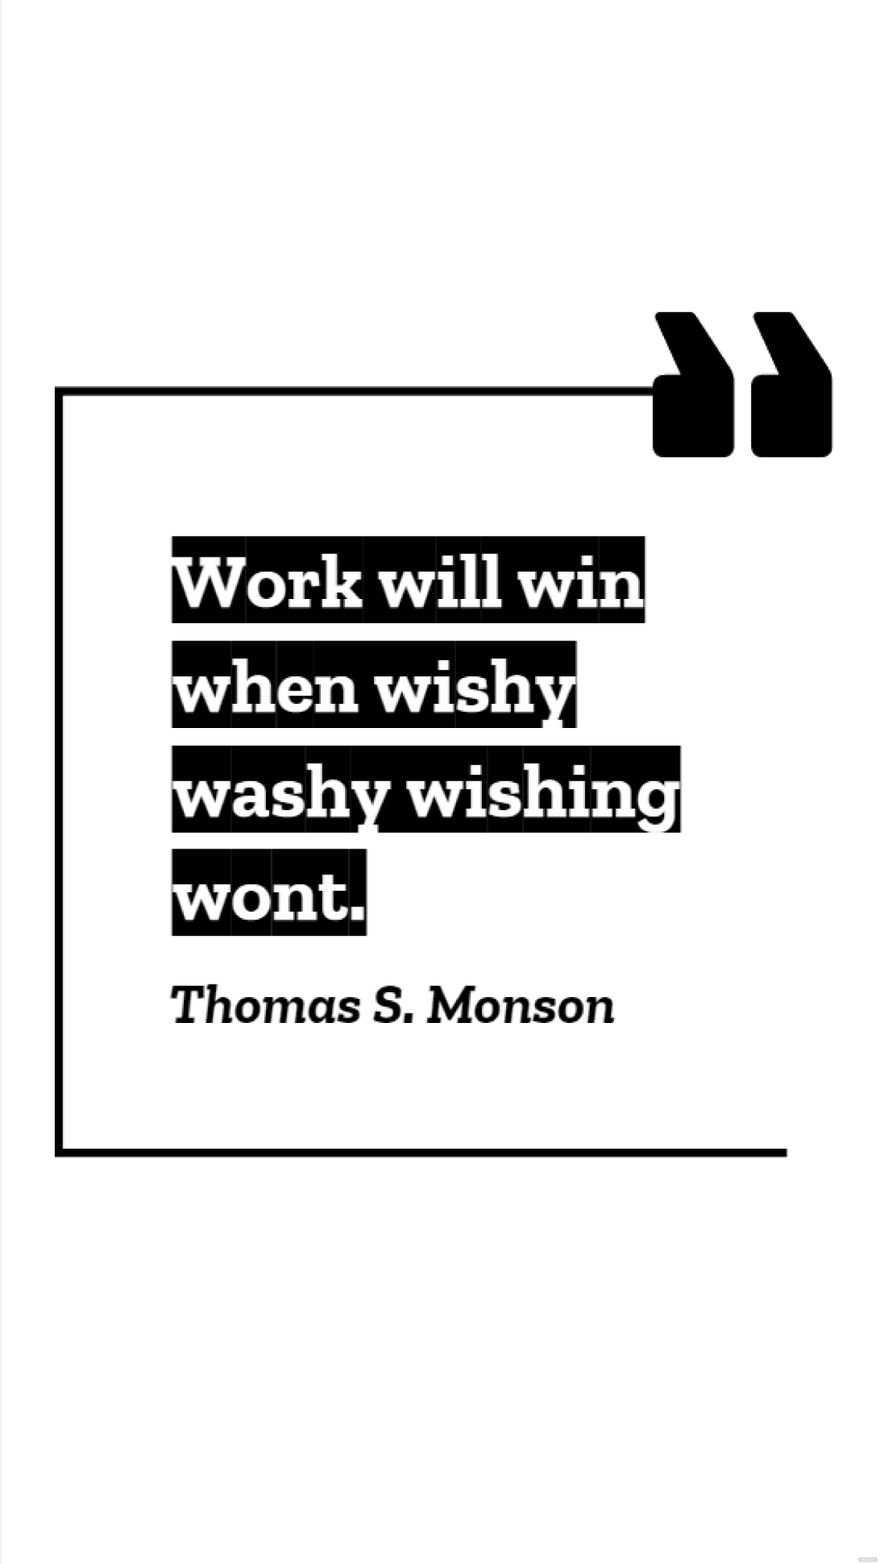 Free Thomas S. Monson - Work will win when wishy washy wishing wont. in JPG